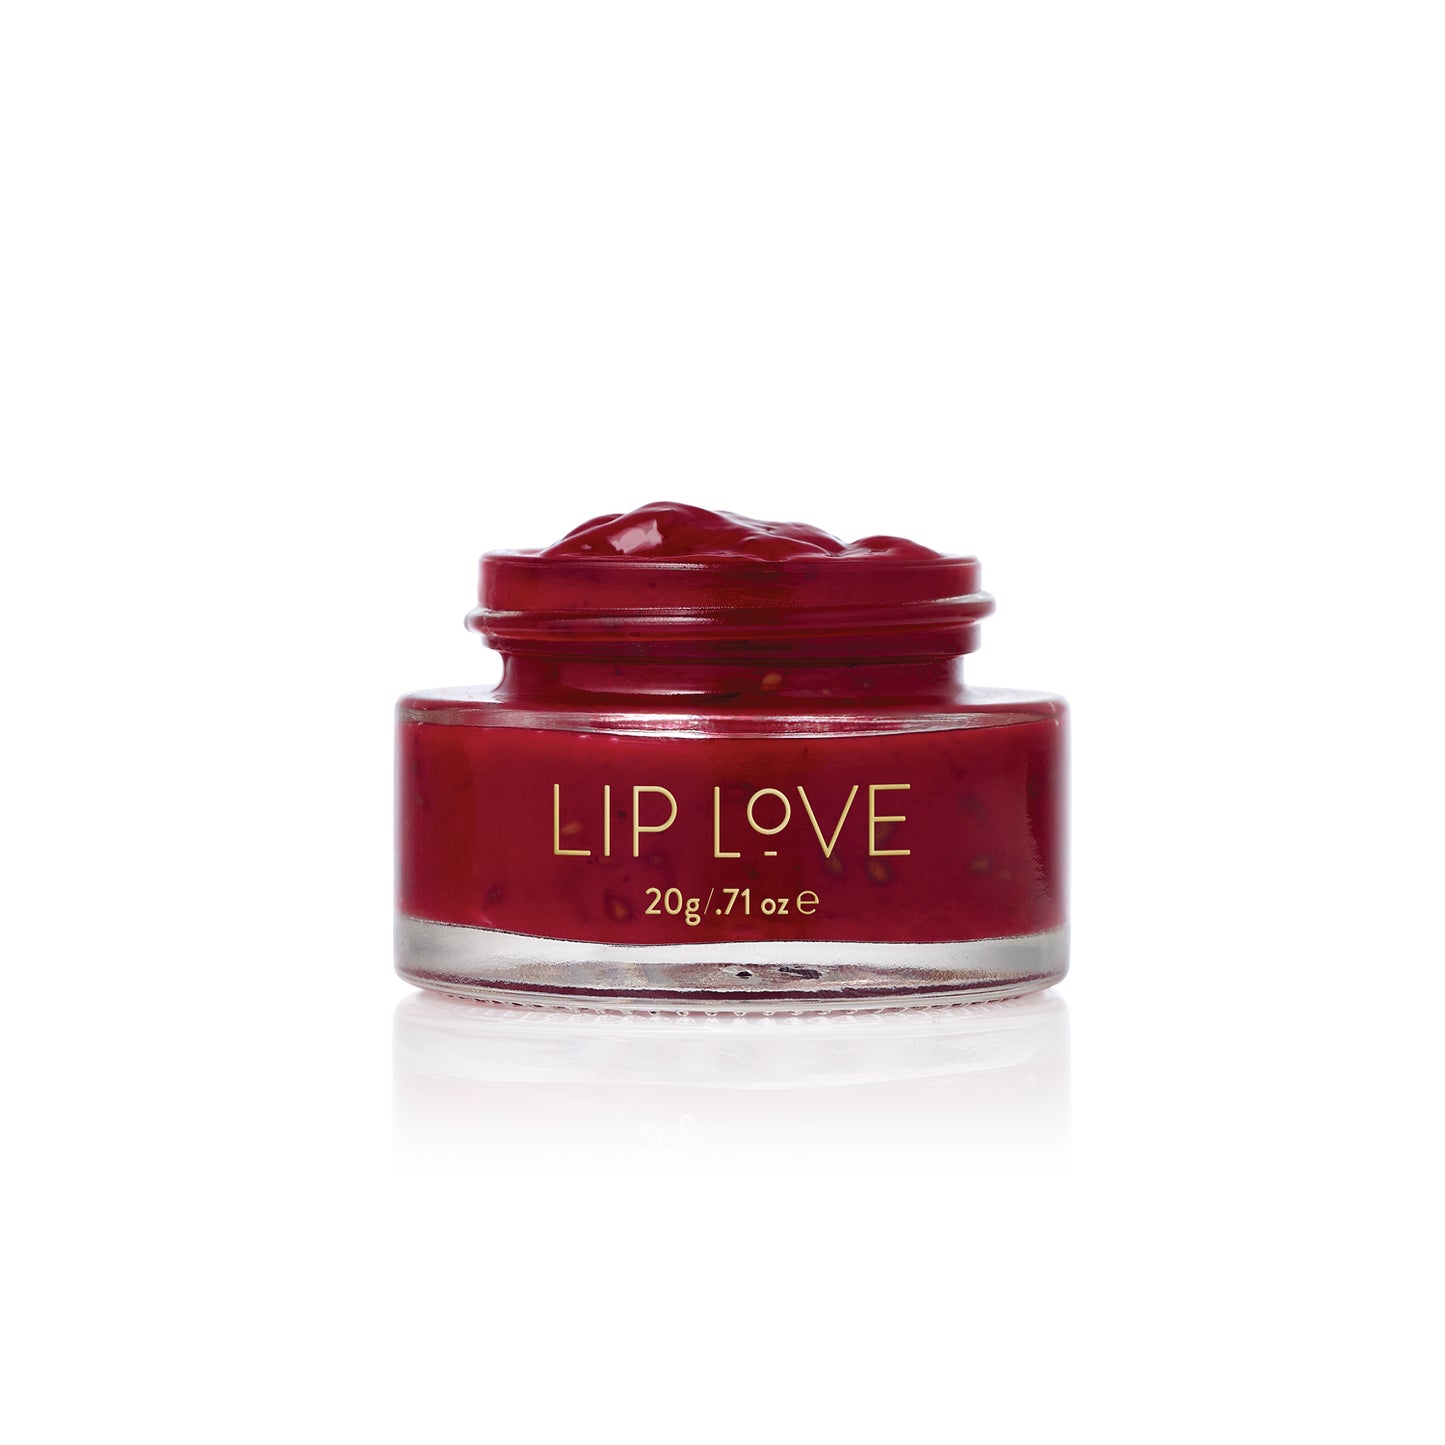 Pepperberry Lip Jam™